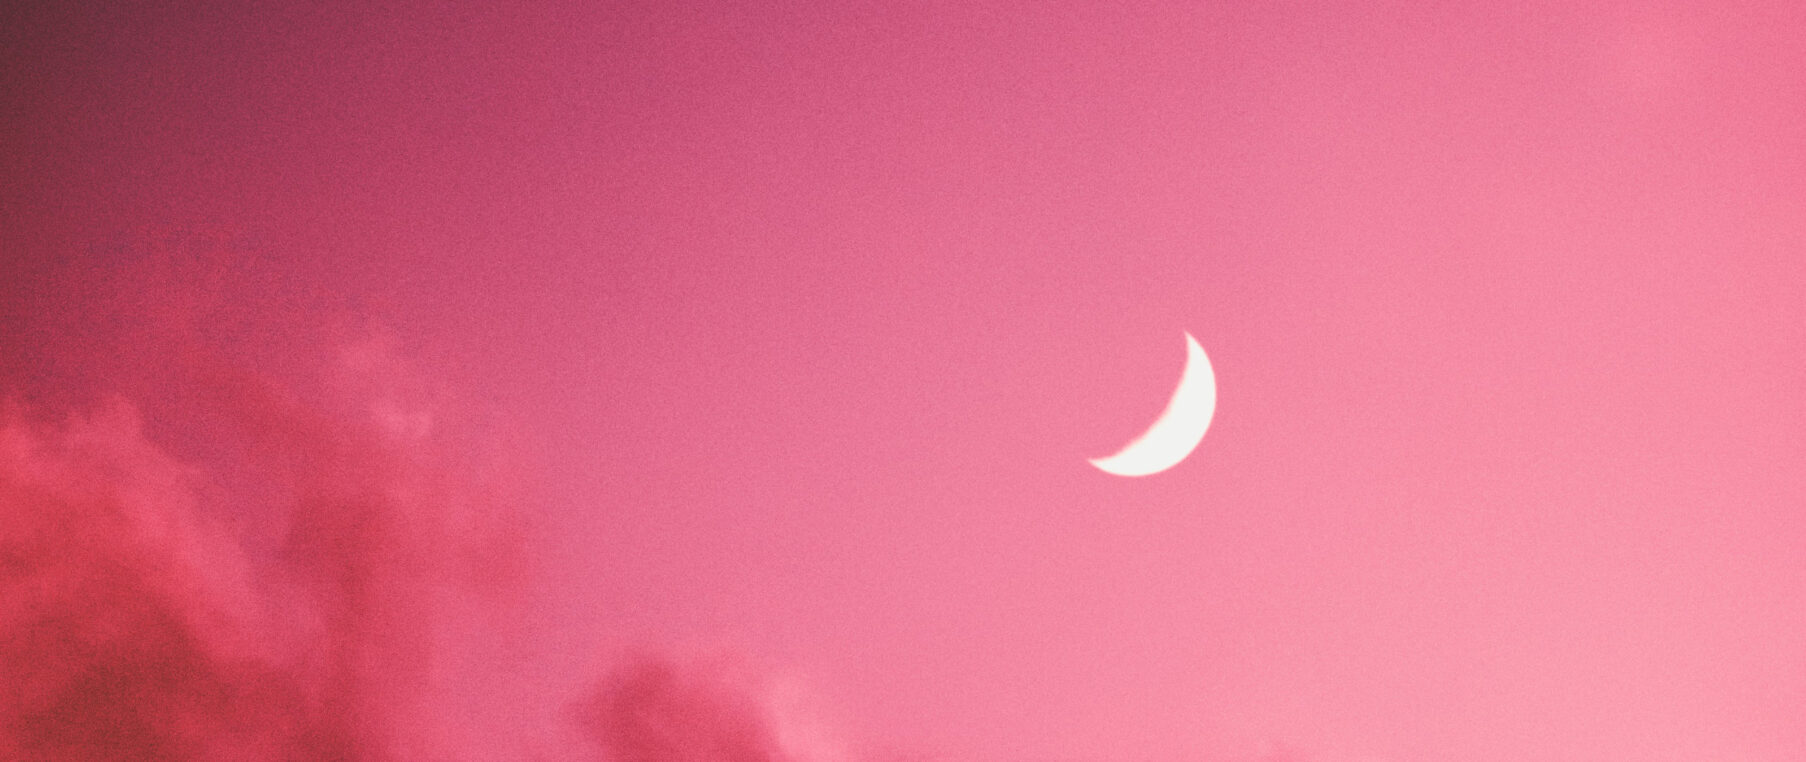 Hình nền Pink Moon sẽ đưa bạn đến với một thế giới mơ mộng, lãng mạn và đầy sức hút. Chỉ cần nhìn vào bức hình này, bạn đã có thể cảm nhận được sự yên bình của một đêm trăng tròn.